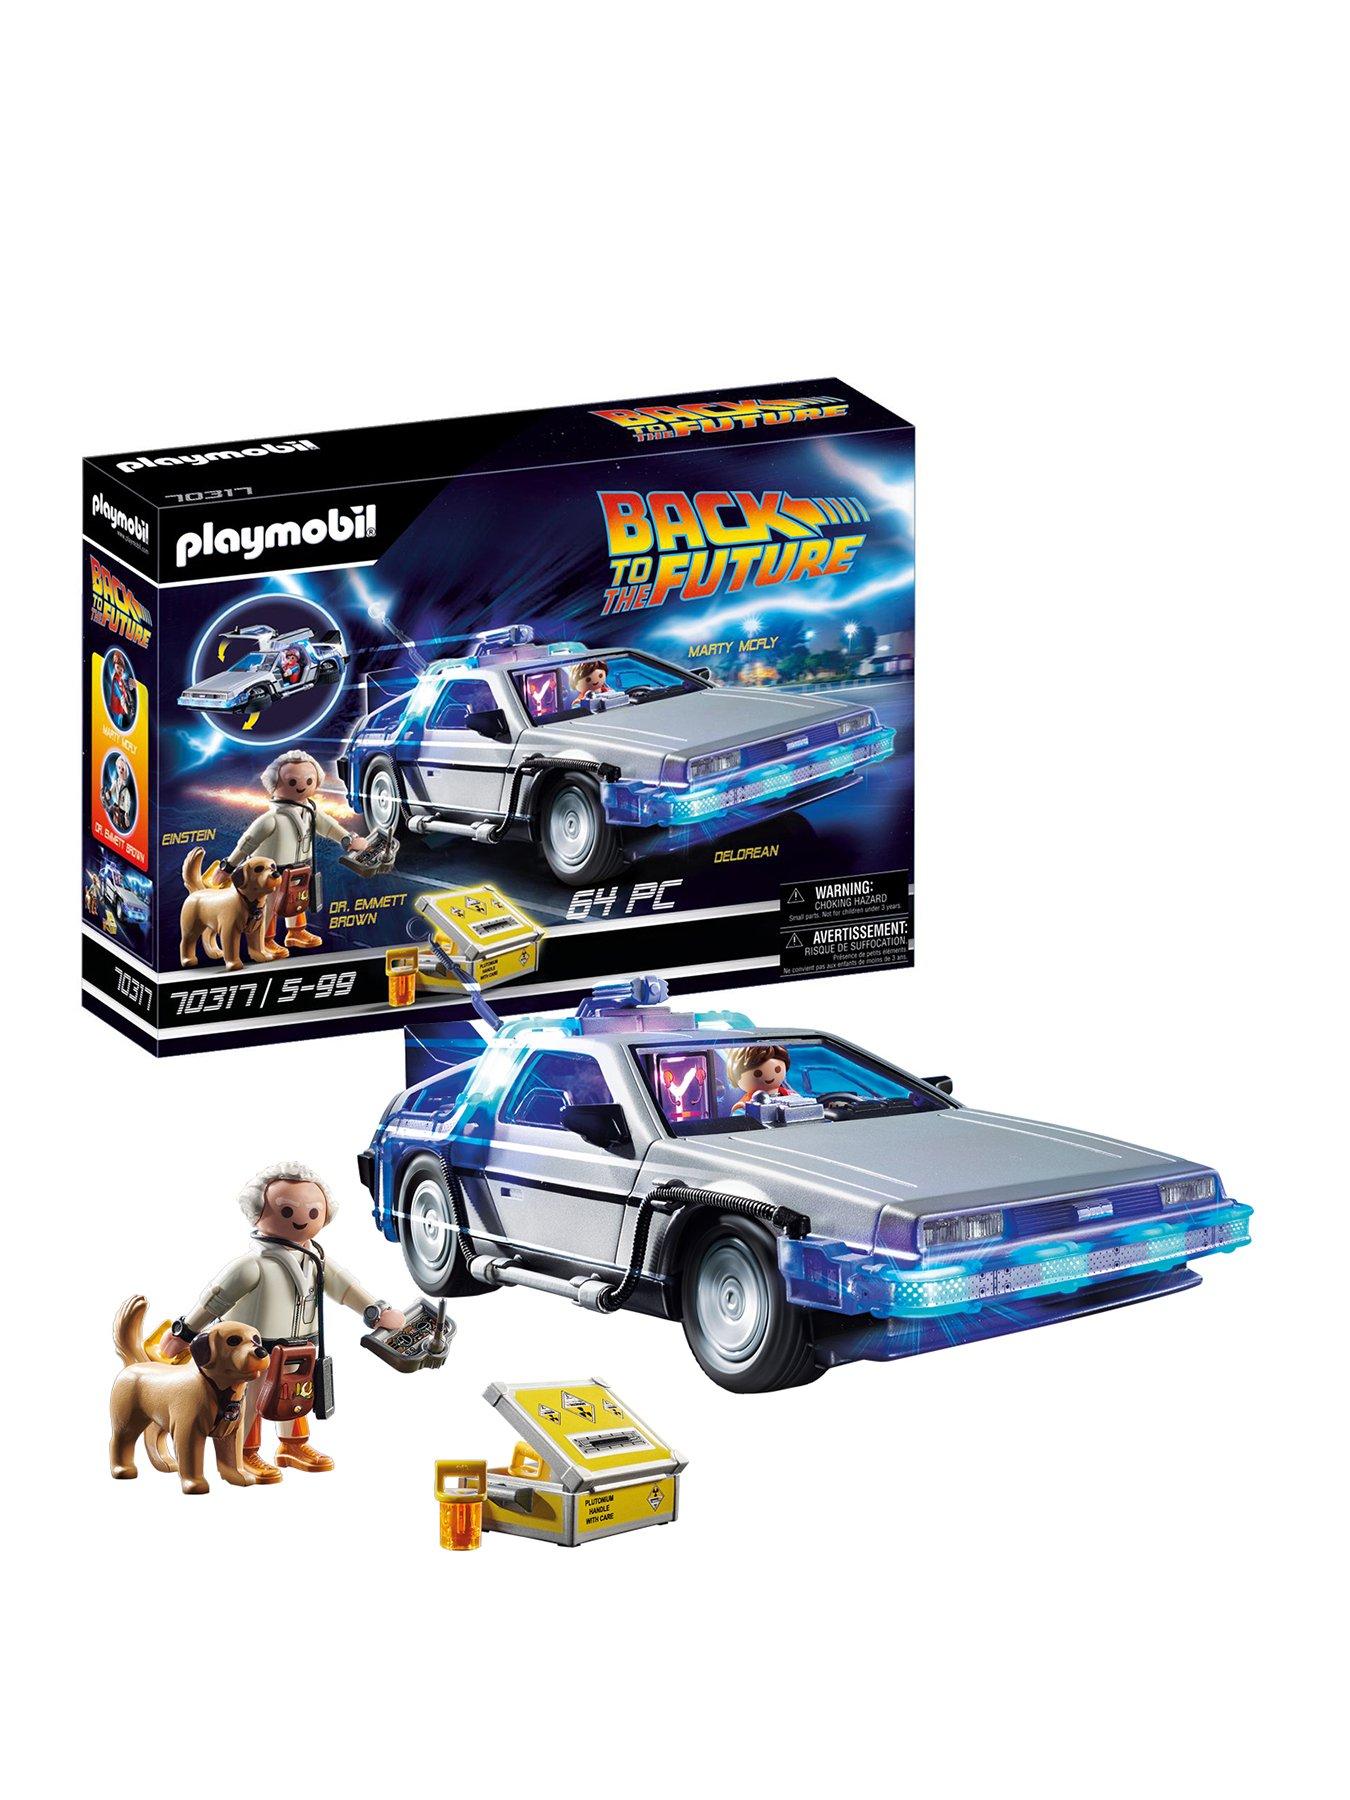 Playmobil 70317 Back to the Future© DeLorean